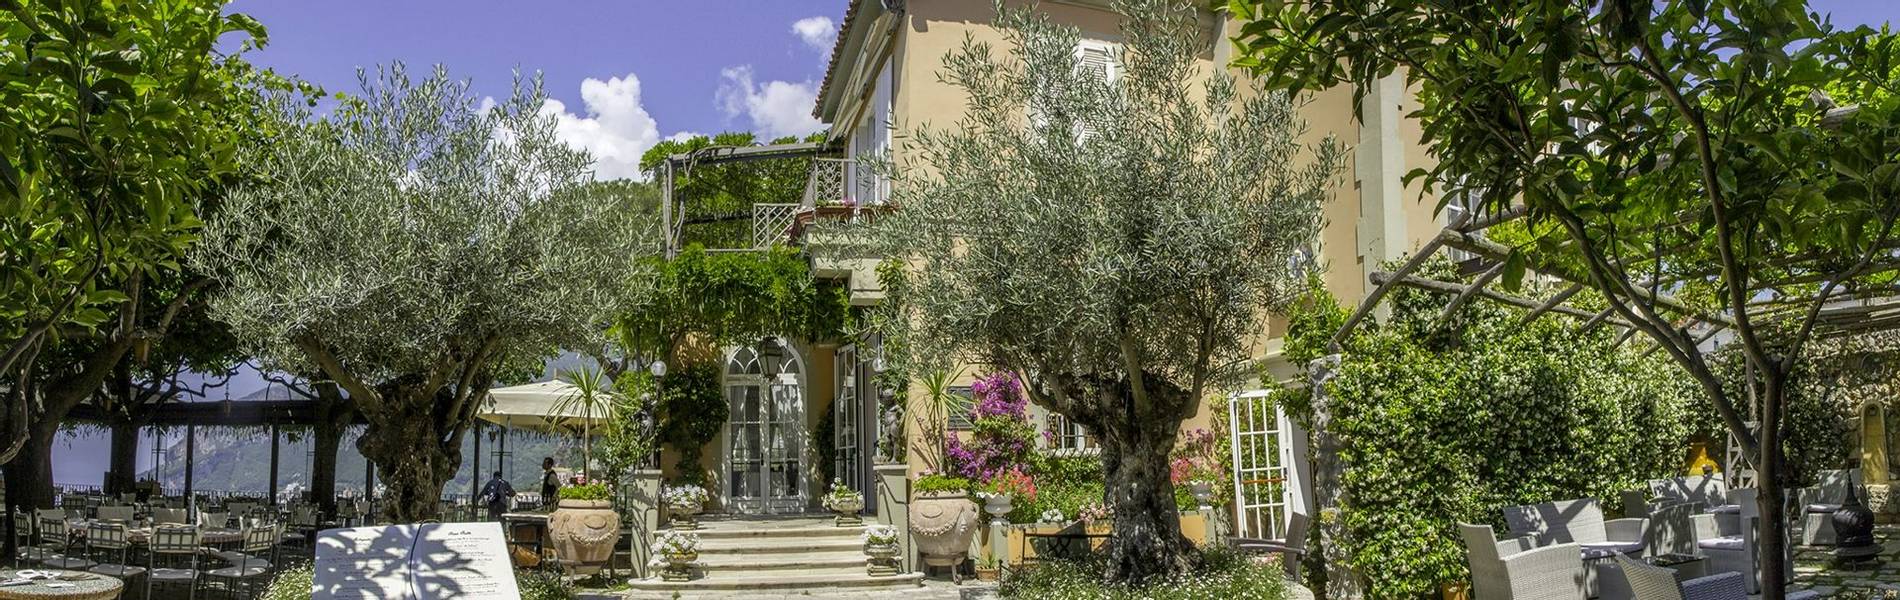 Villa Maria, Amalfi Coast, Italy, The entrance.jpg